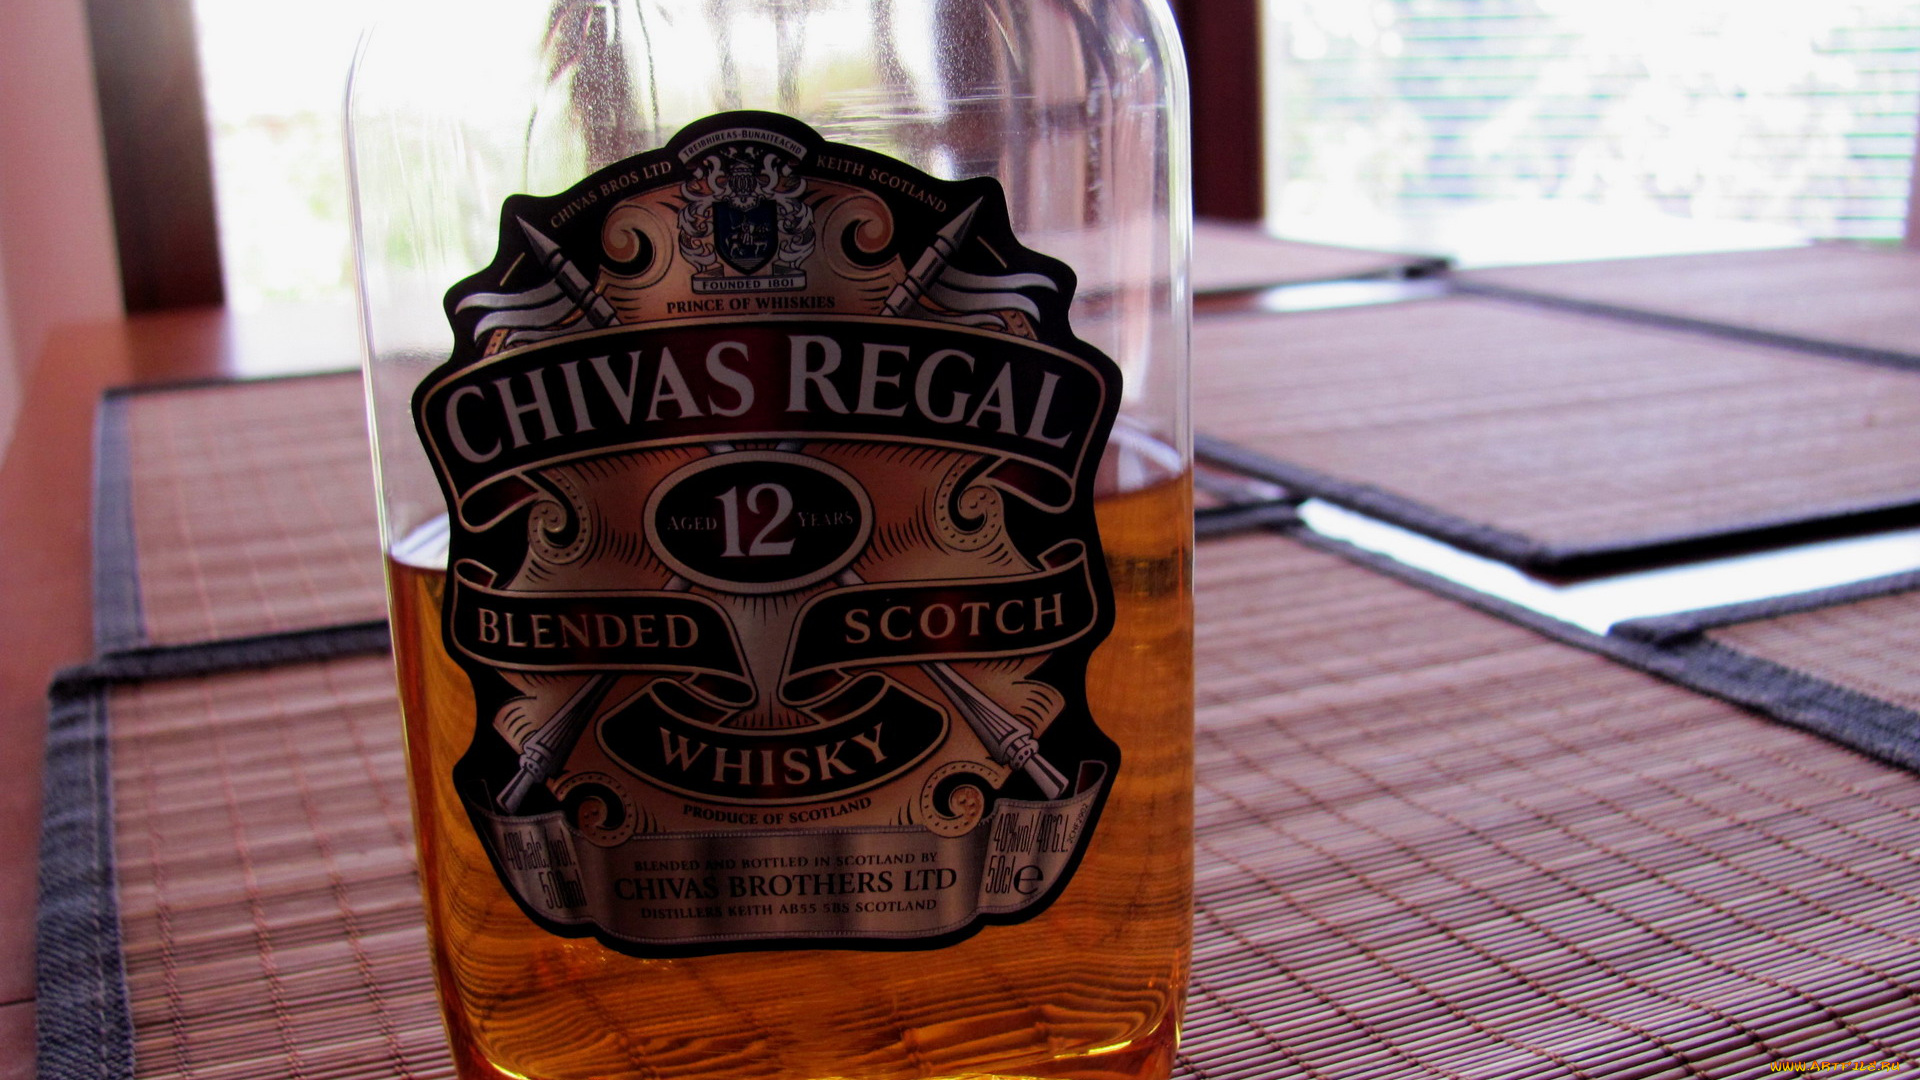 бренды, chivasregal, виски